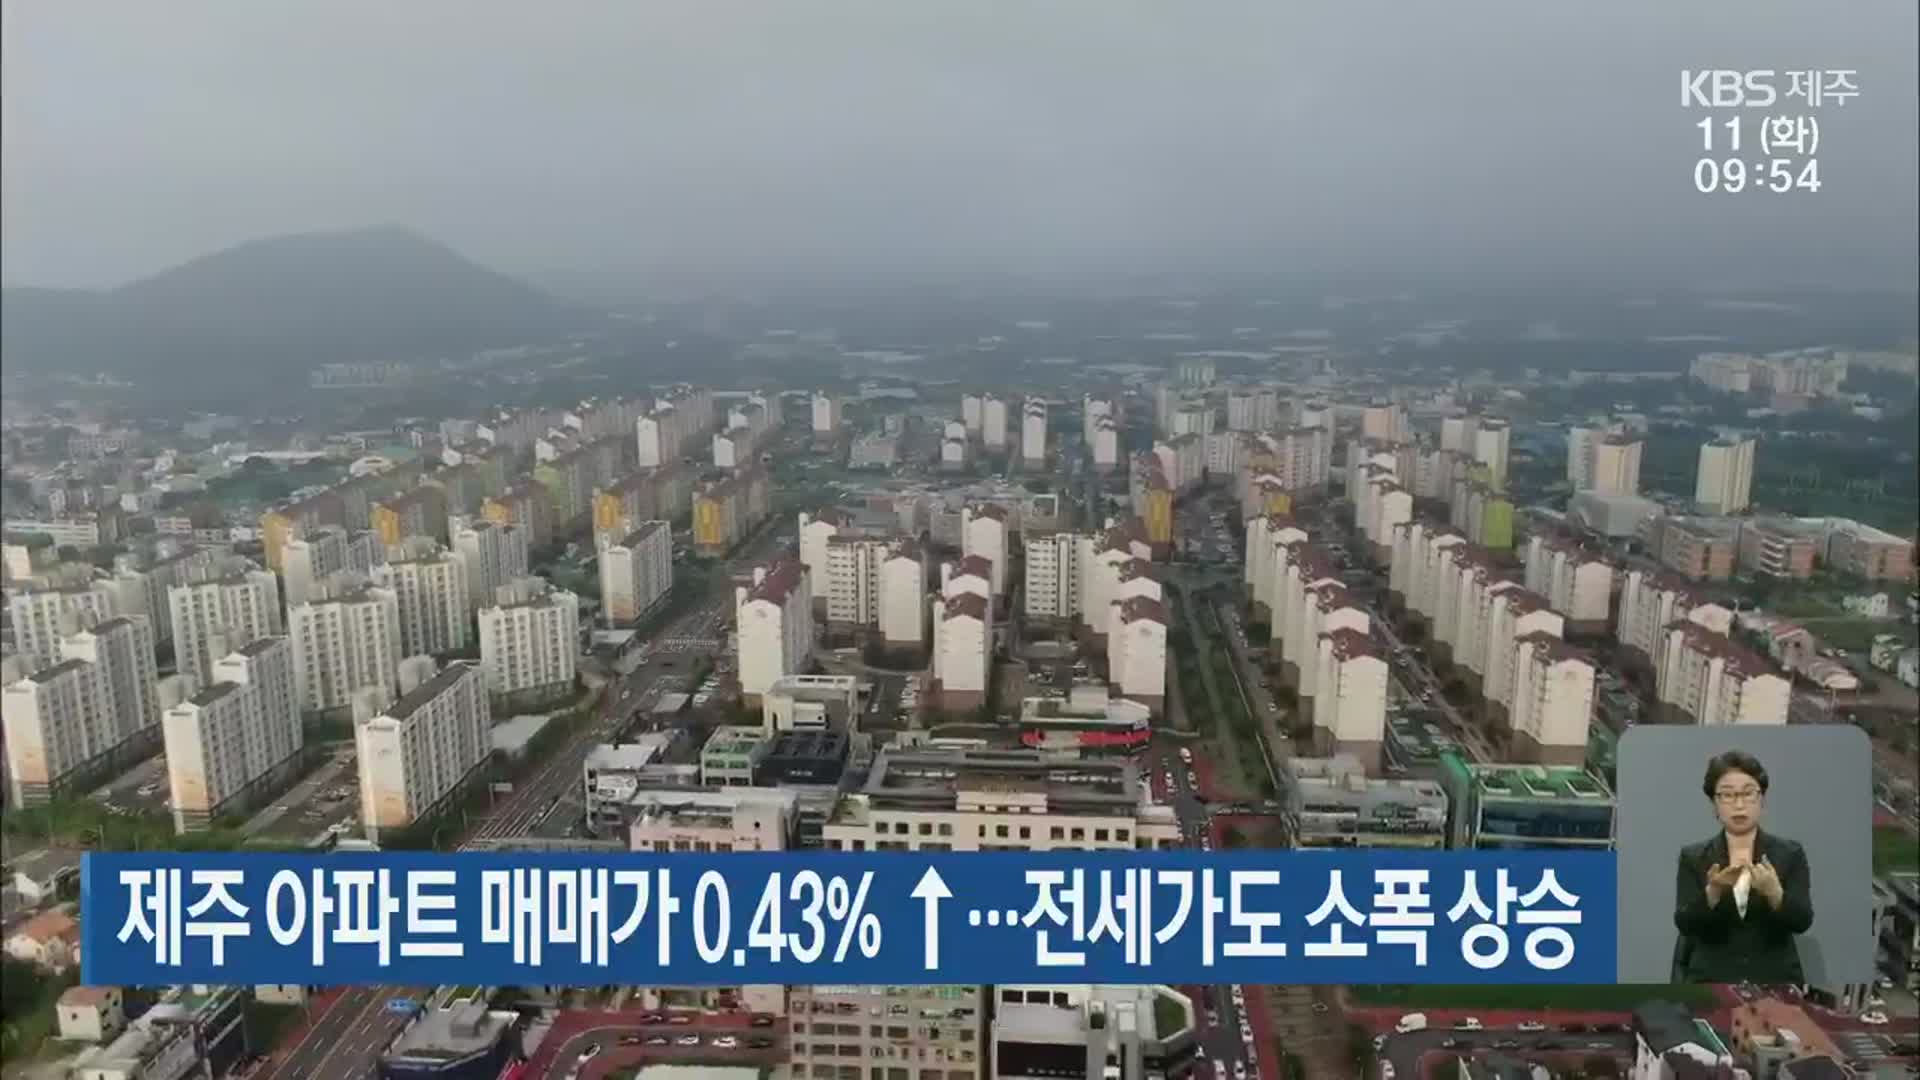 제주 아파트 매매가 0.43% ↑·전세가도 소폭 상승